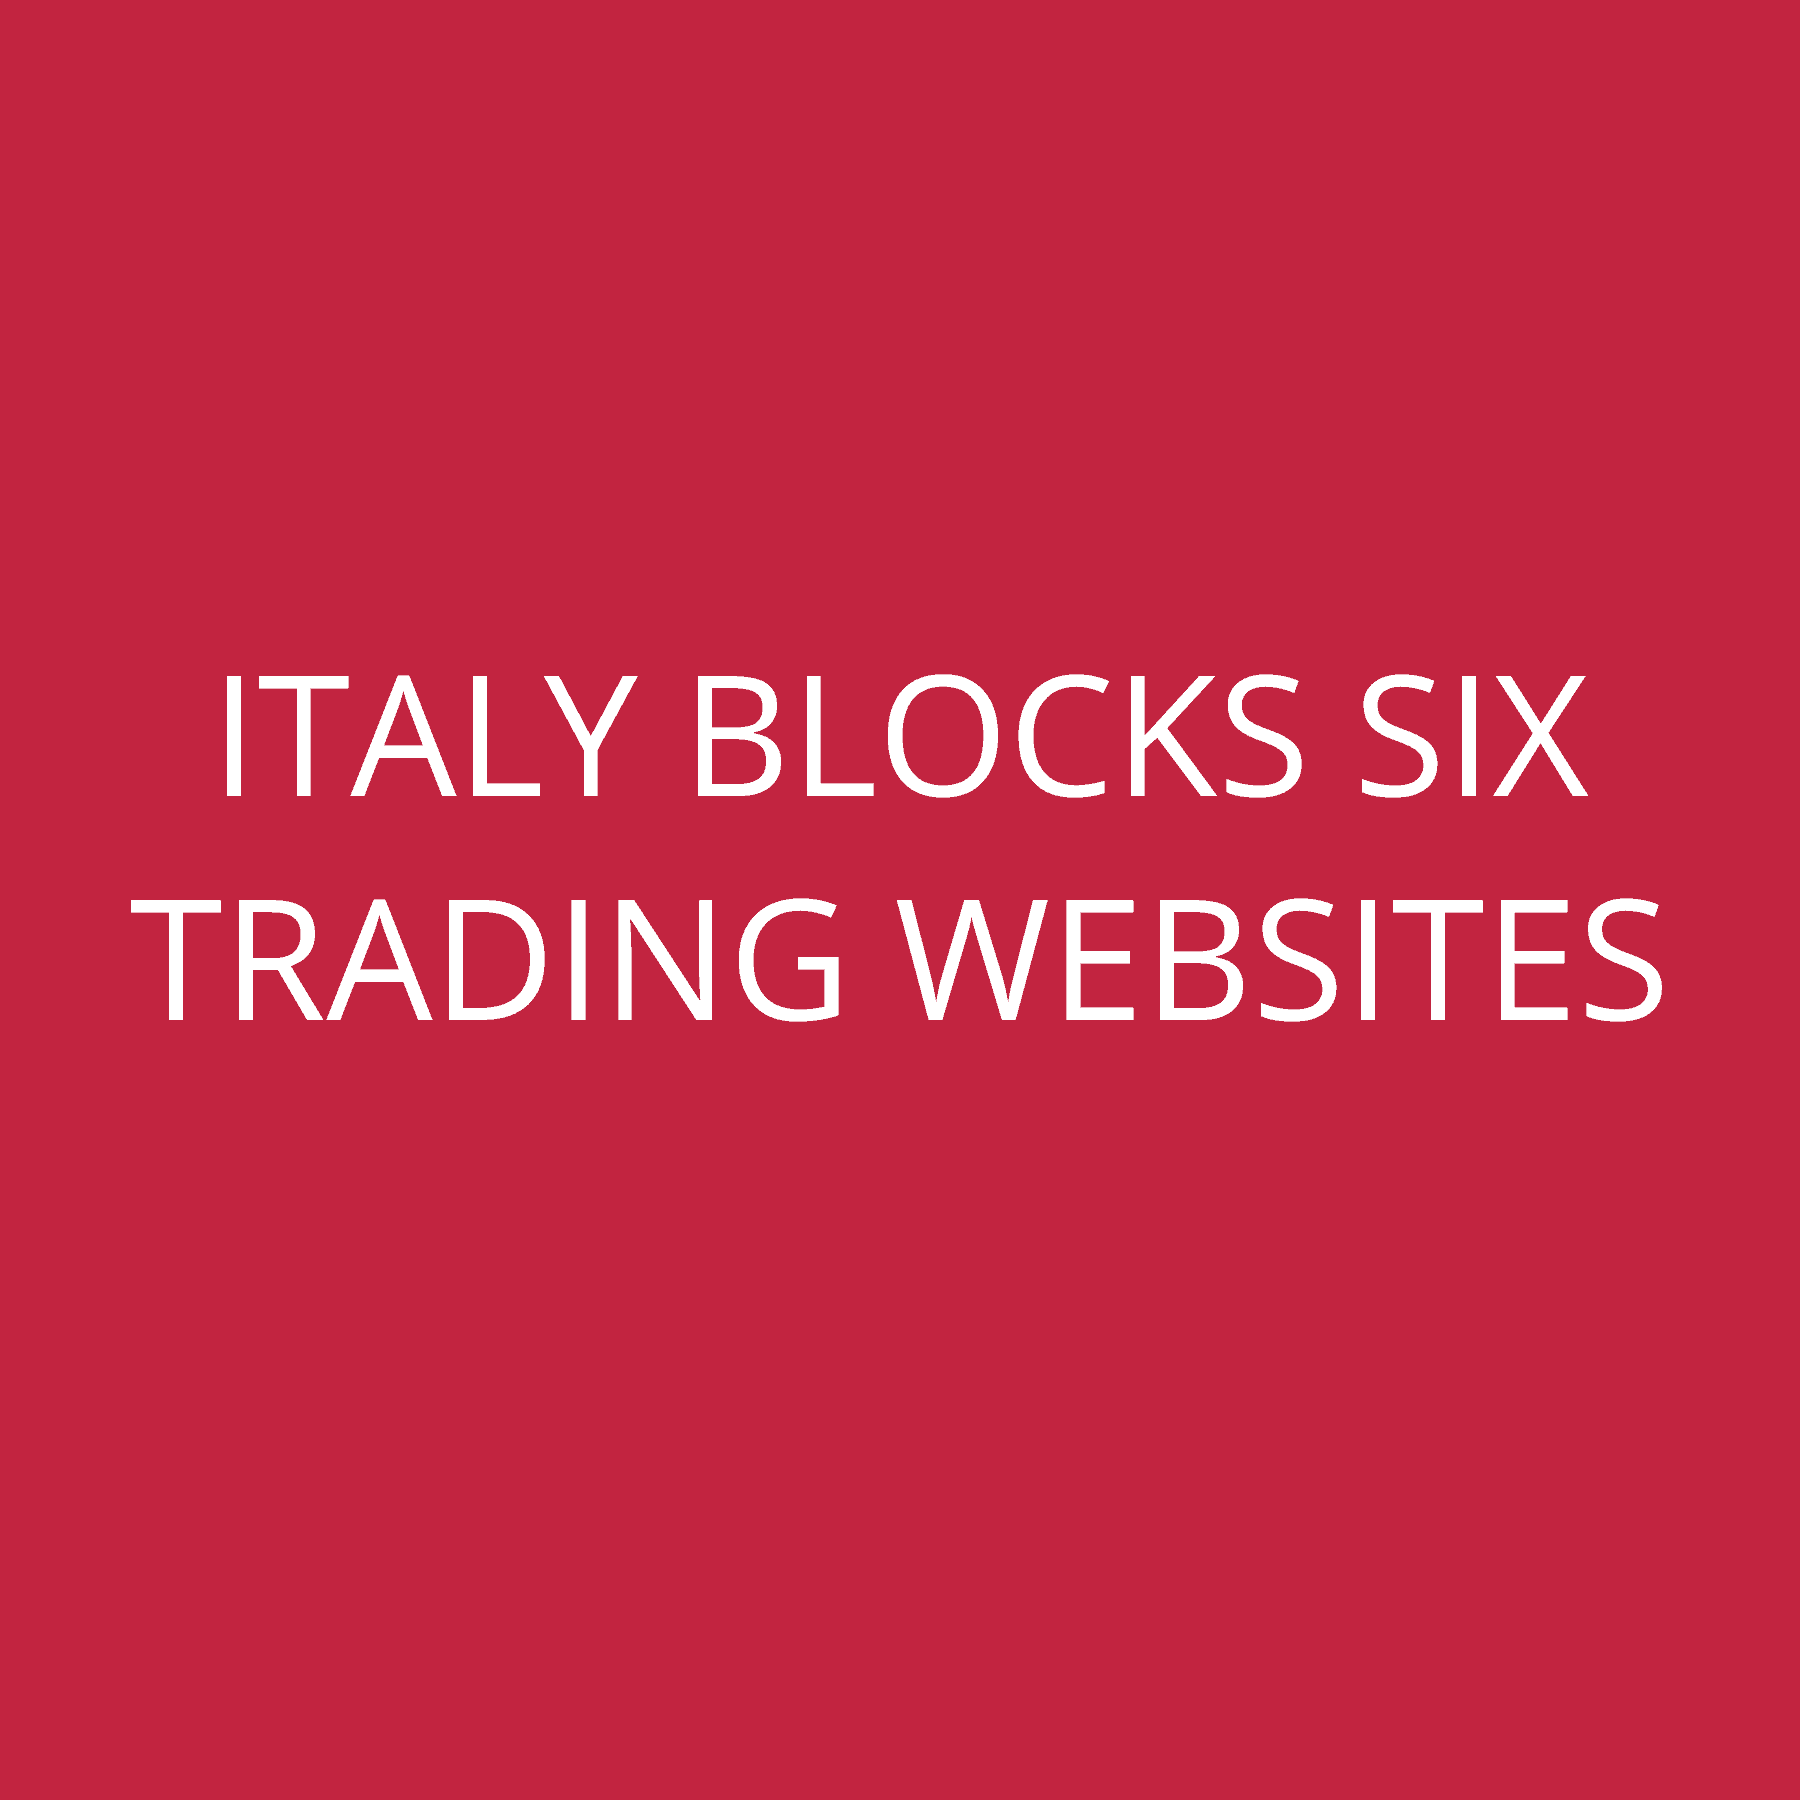 Italy blocks Six Trading Websites